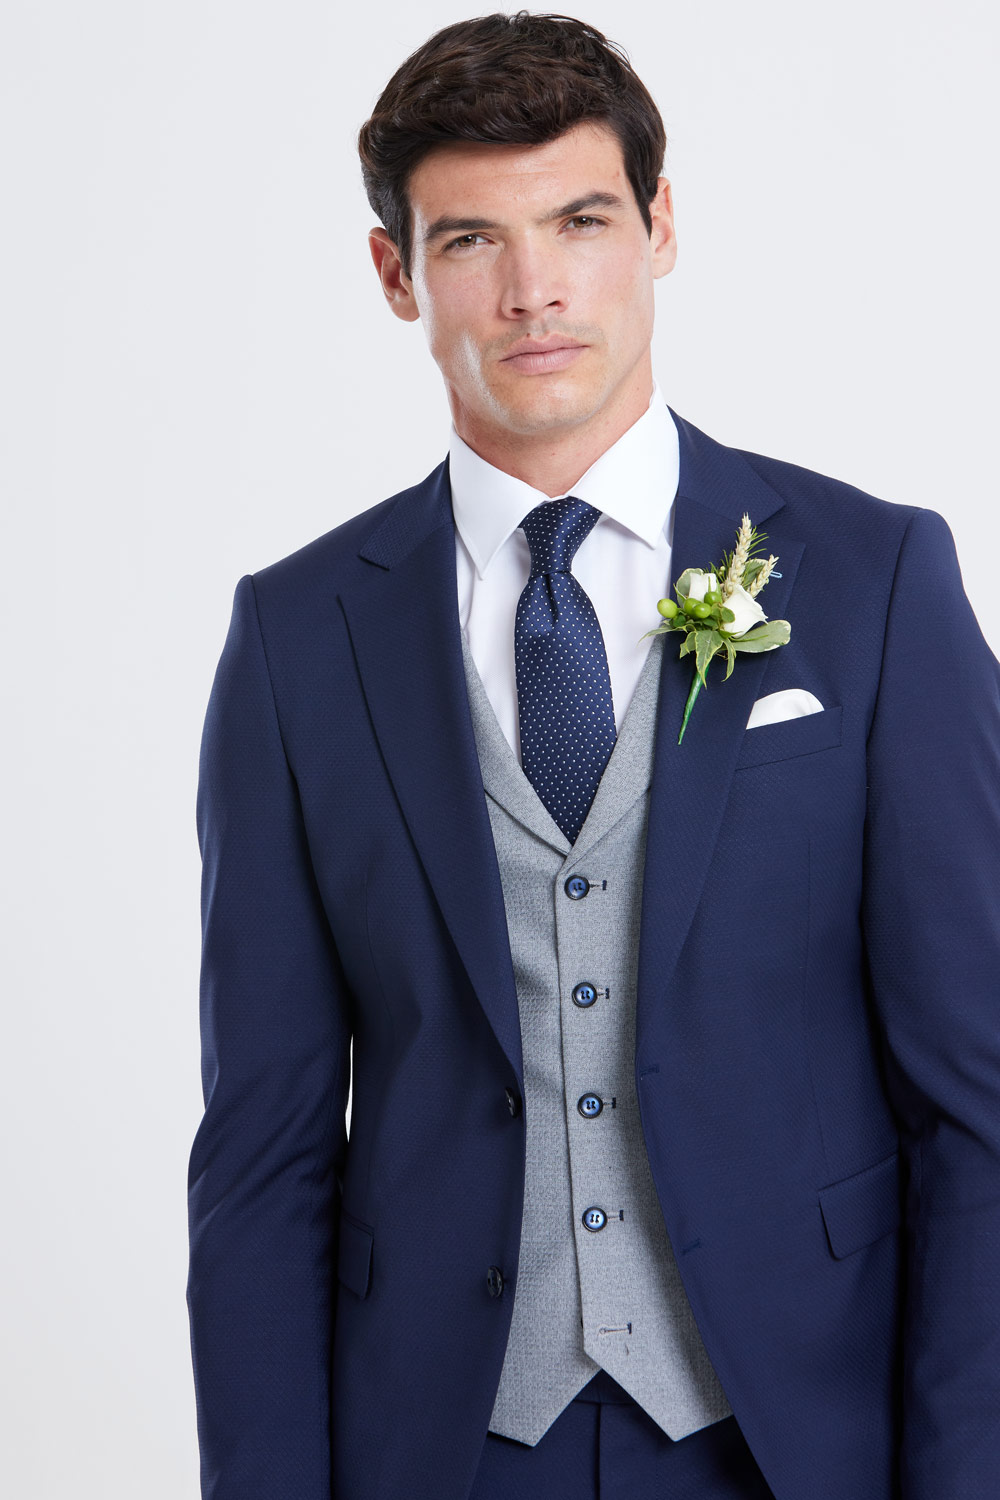 James Navy 3 Piece Wedding Suit Grey Waistcoat - Tom Murphy's Formal ...